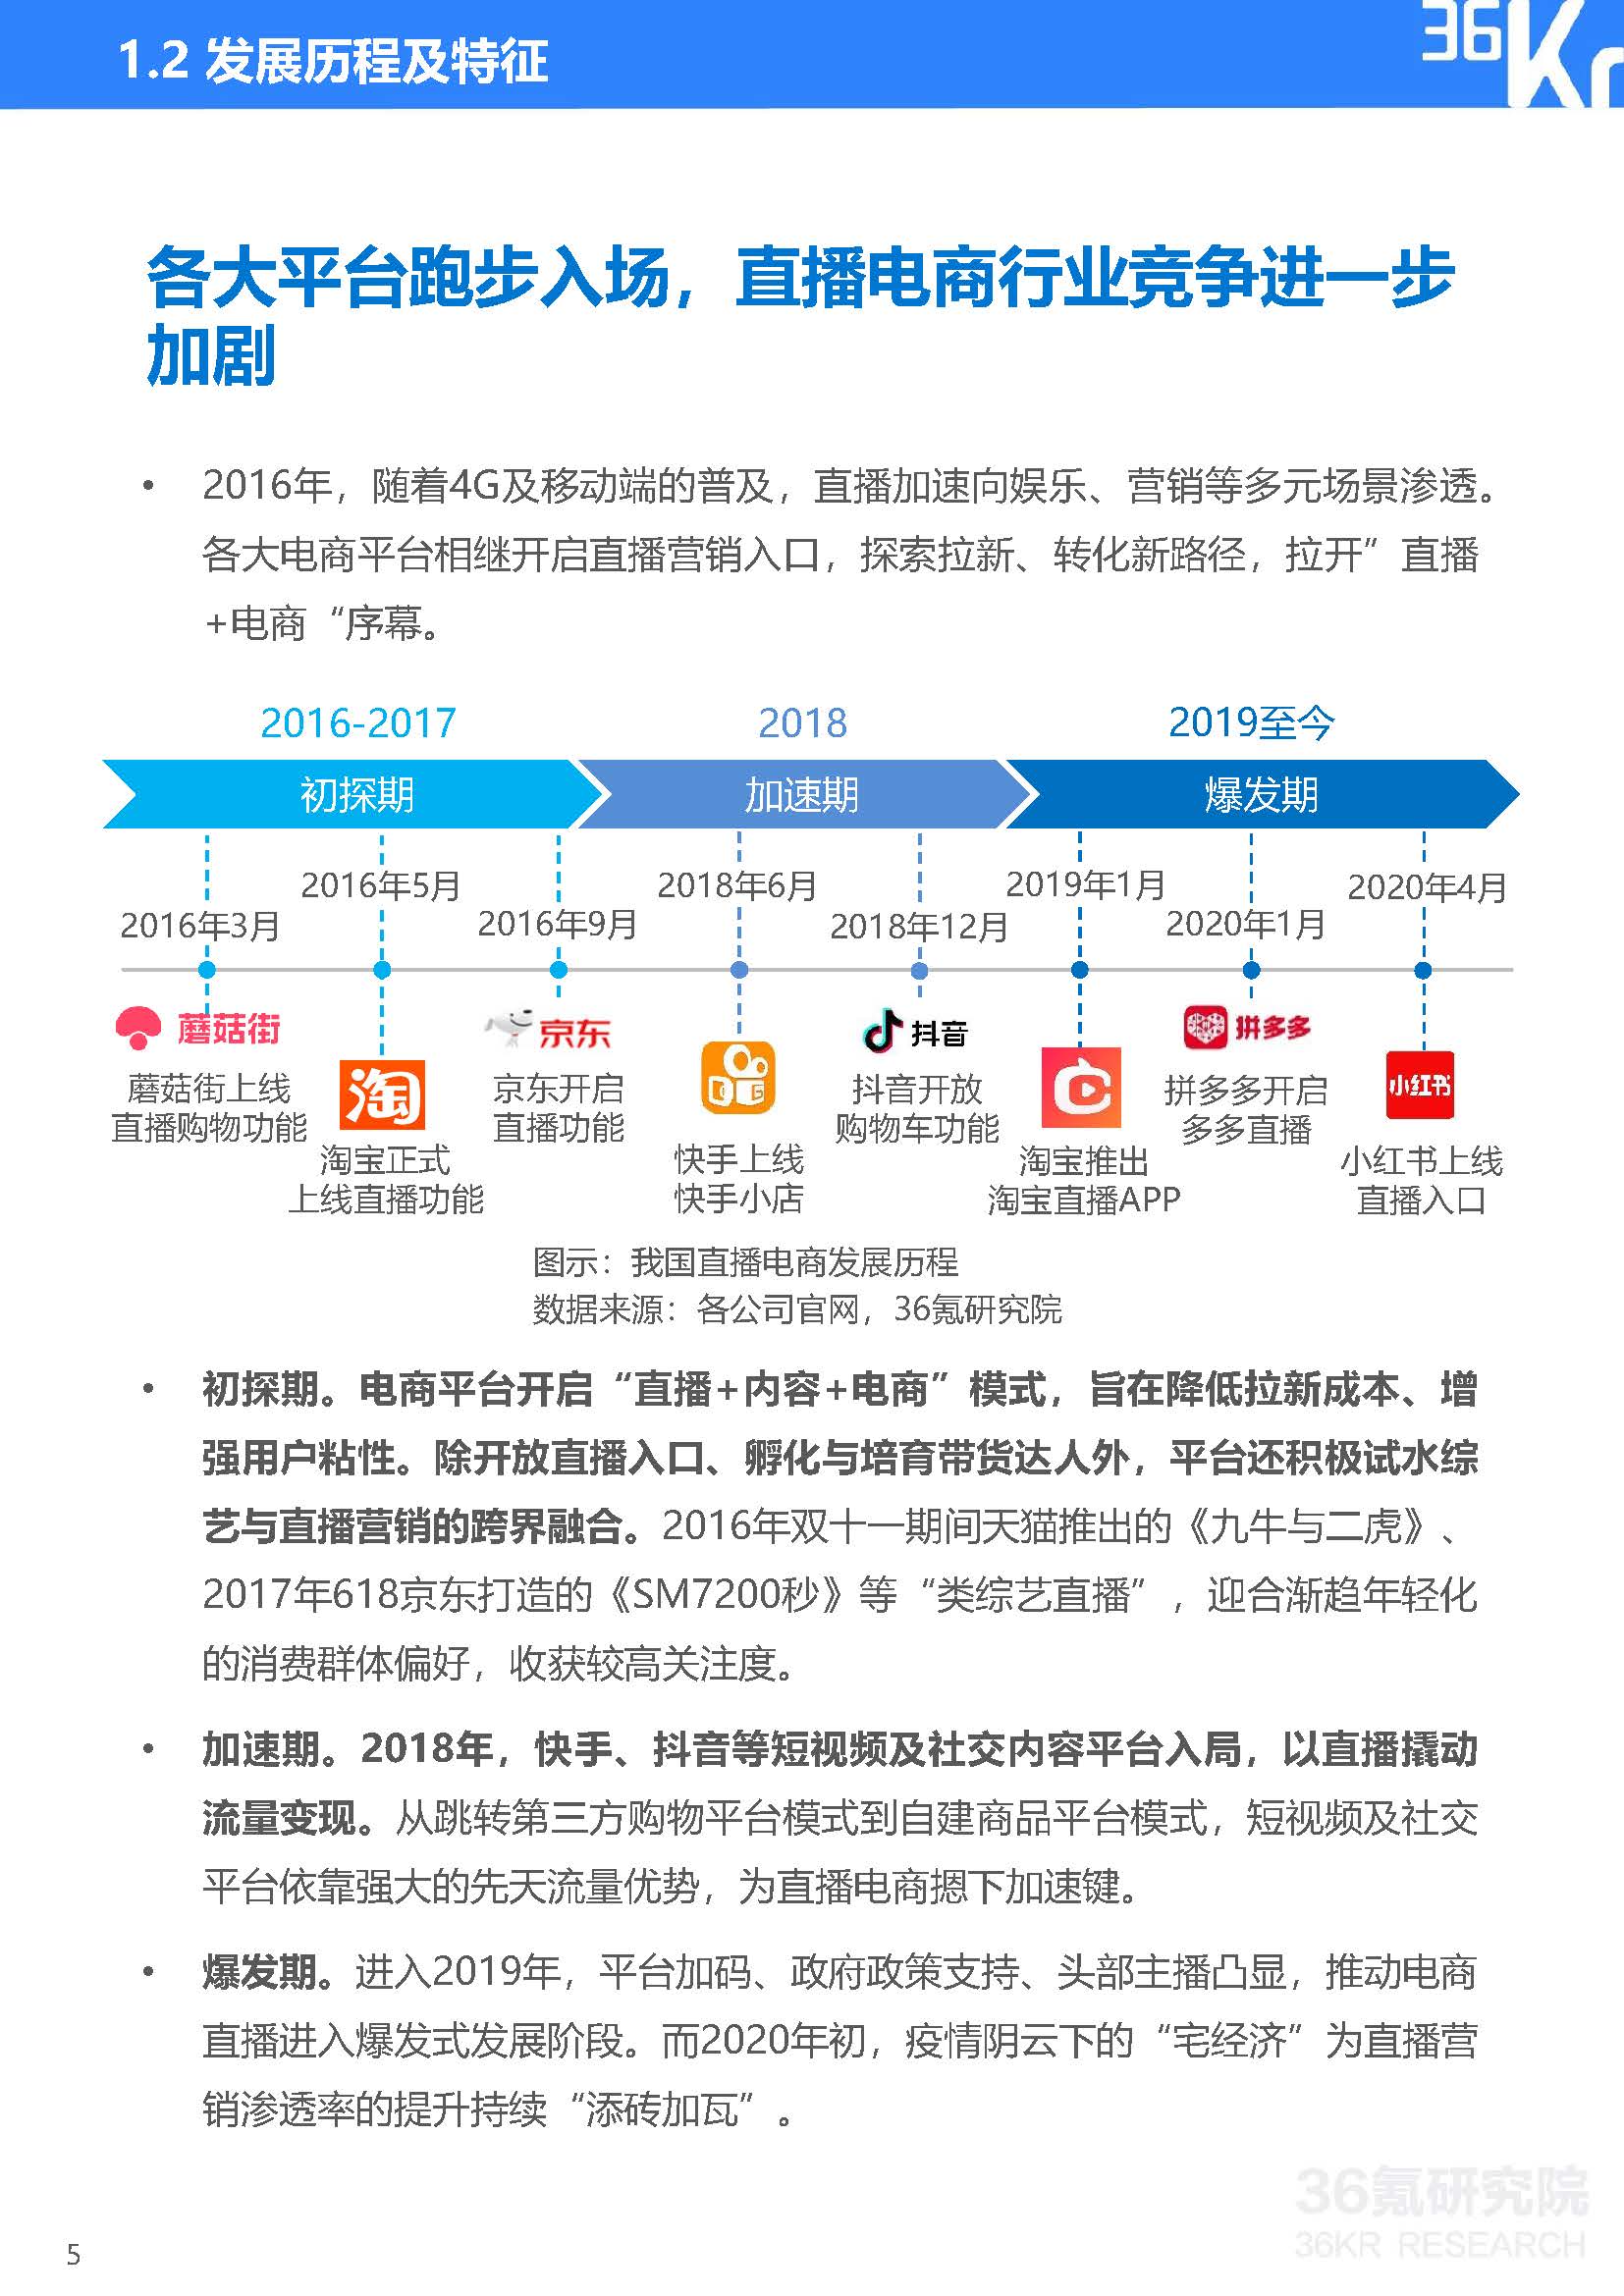 36Kr：2020年中国直播电商行业研究报告(33页)_页面_06.jpg